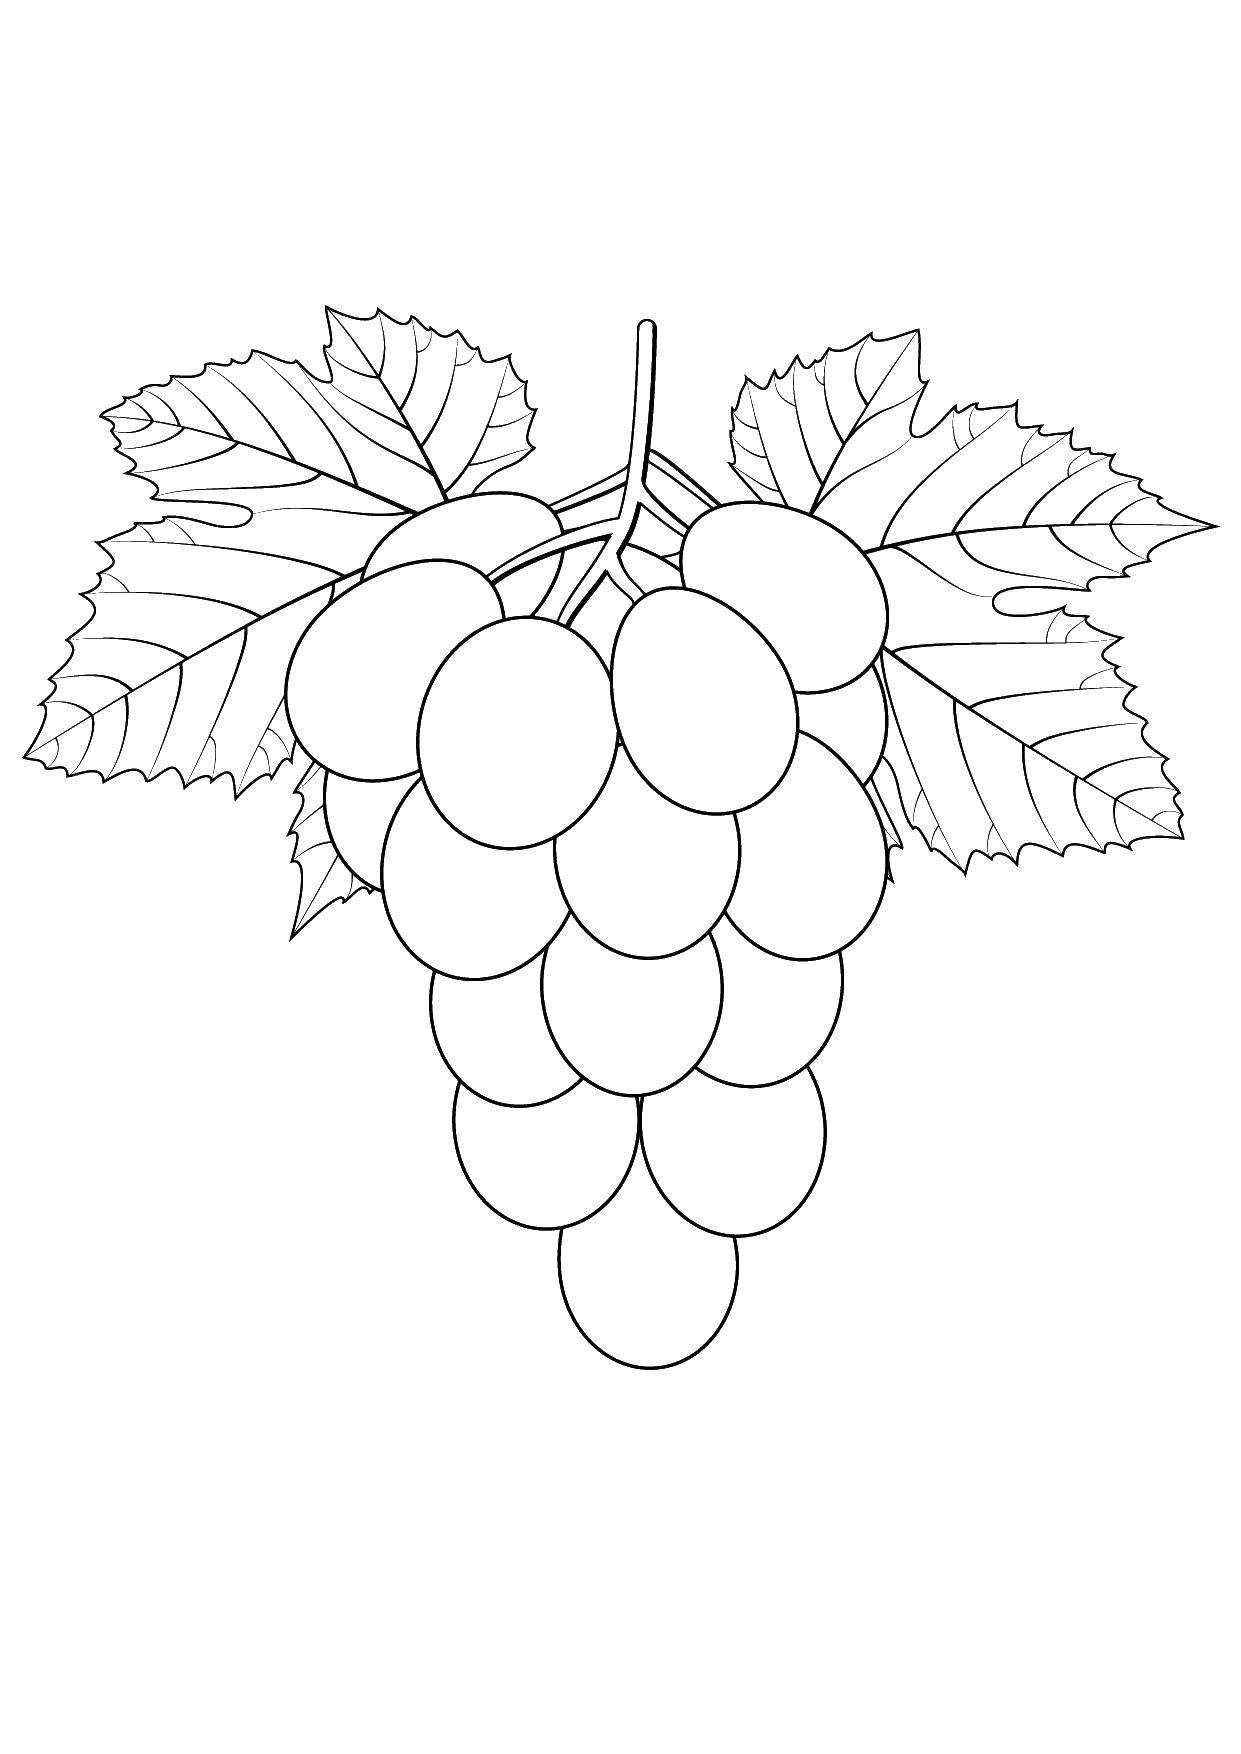 Название: Раскраска Виноград. Категория: виноград. Теги: виноград, фрукты.